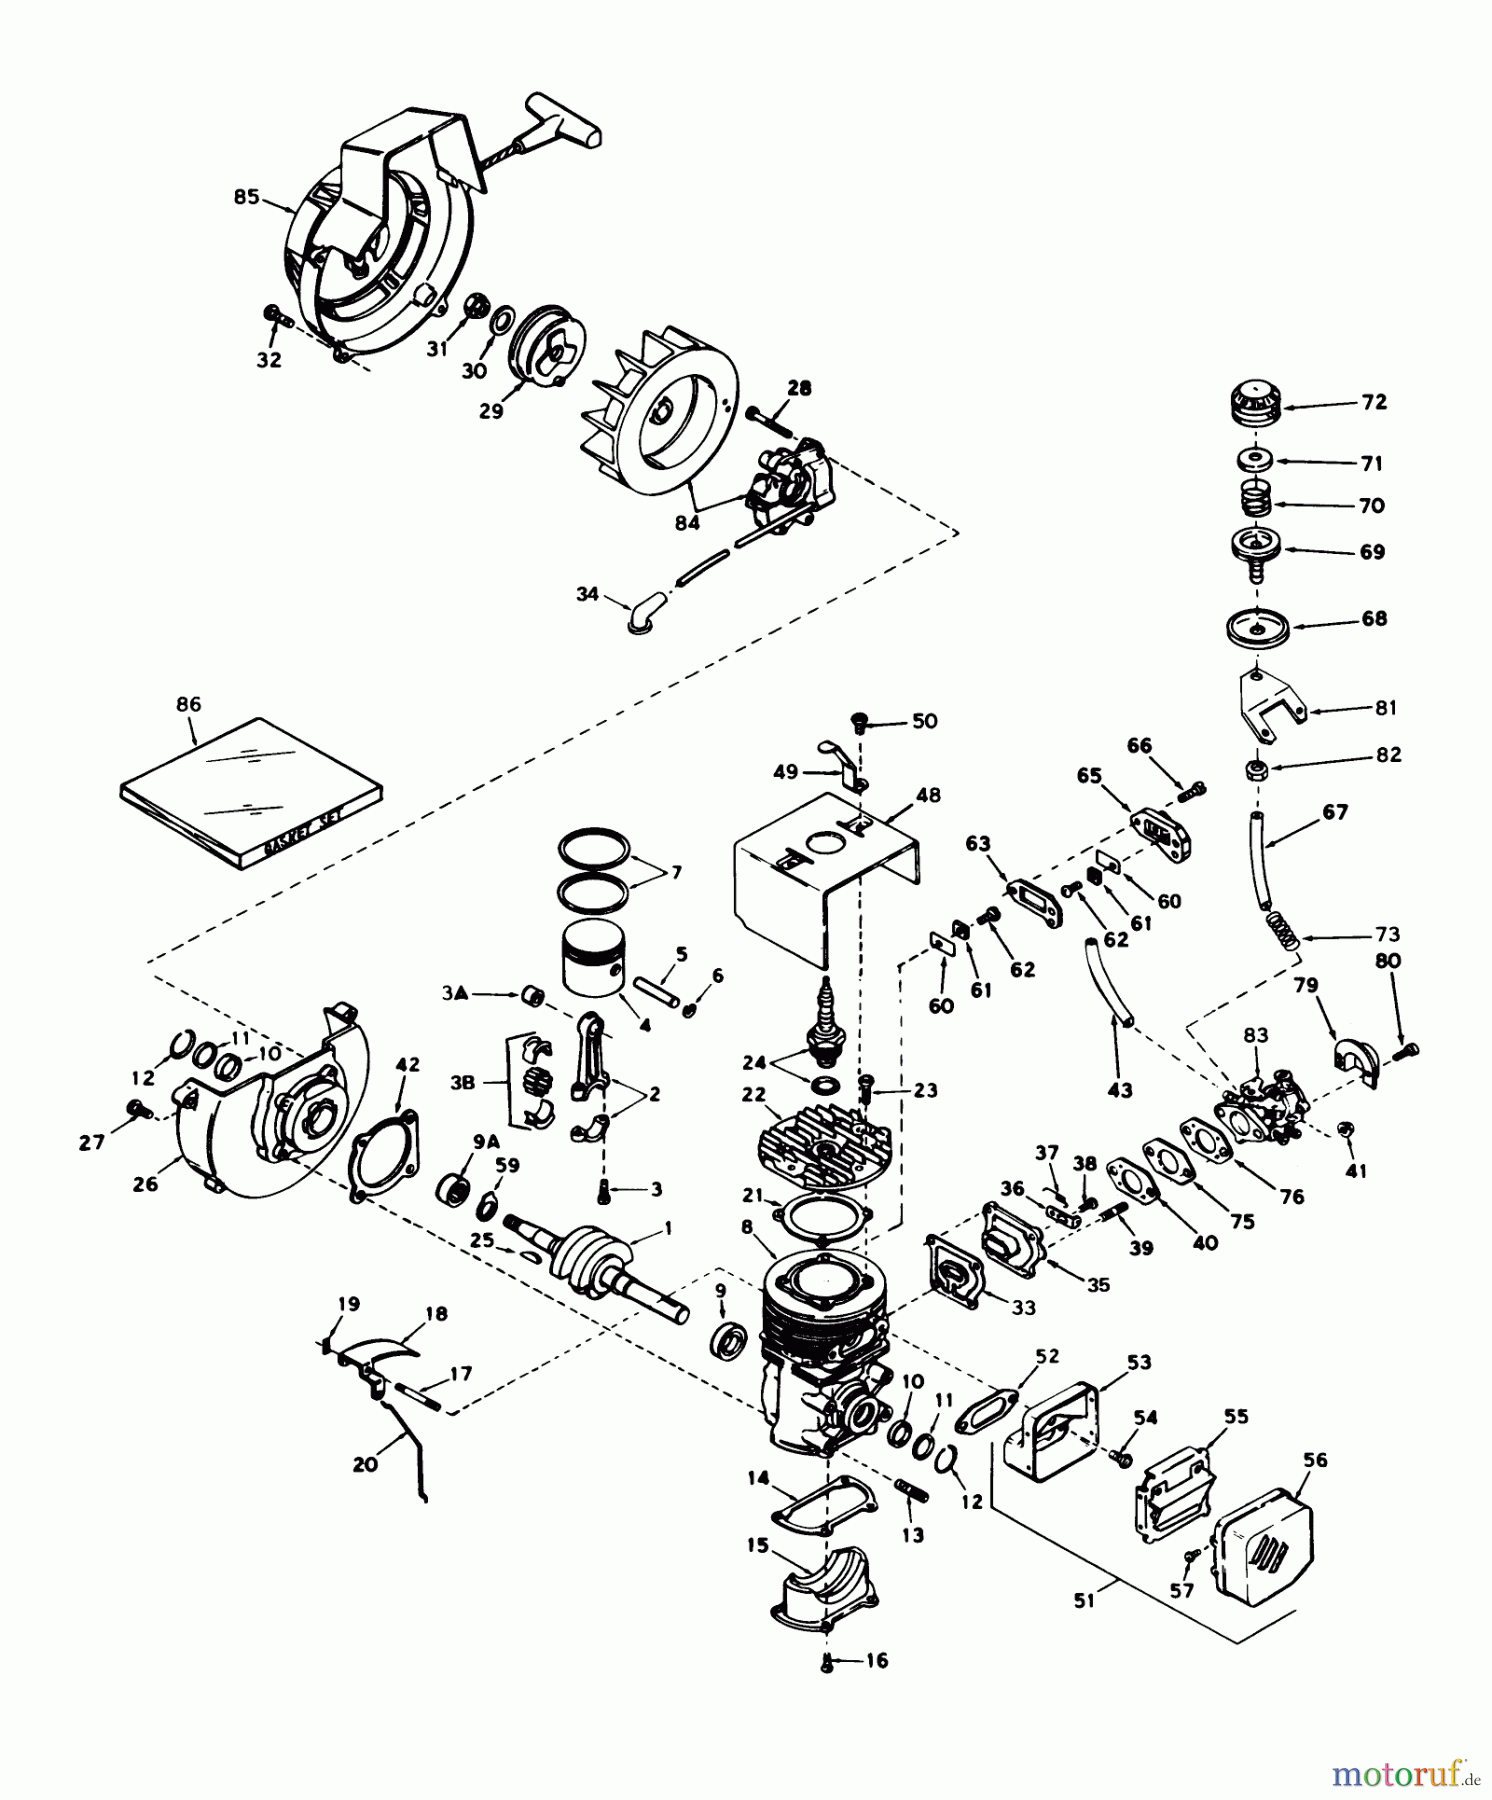  Toro Neu Snow Blowers/Snow Throwers Seite 1 31405 - Toro Snow Pup, 1977 (7000001-7999999) ENGINE TECUMSEH MODEL NO. AH520 TYPE 1401J